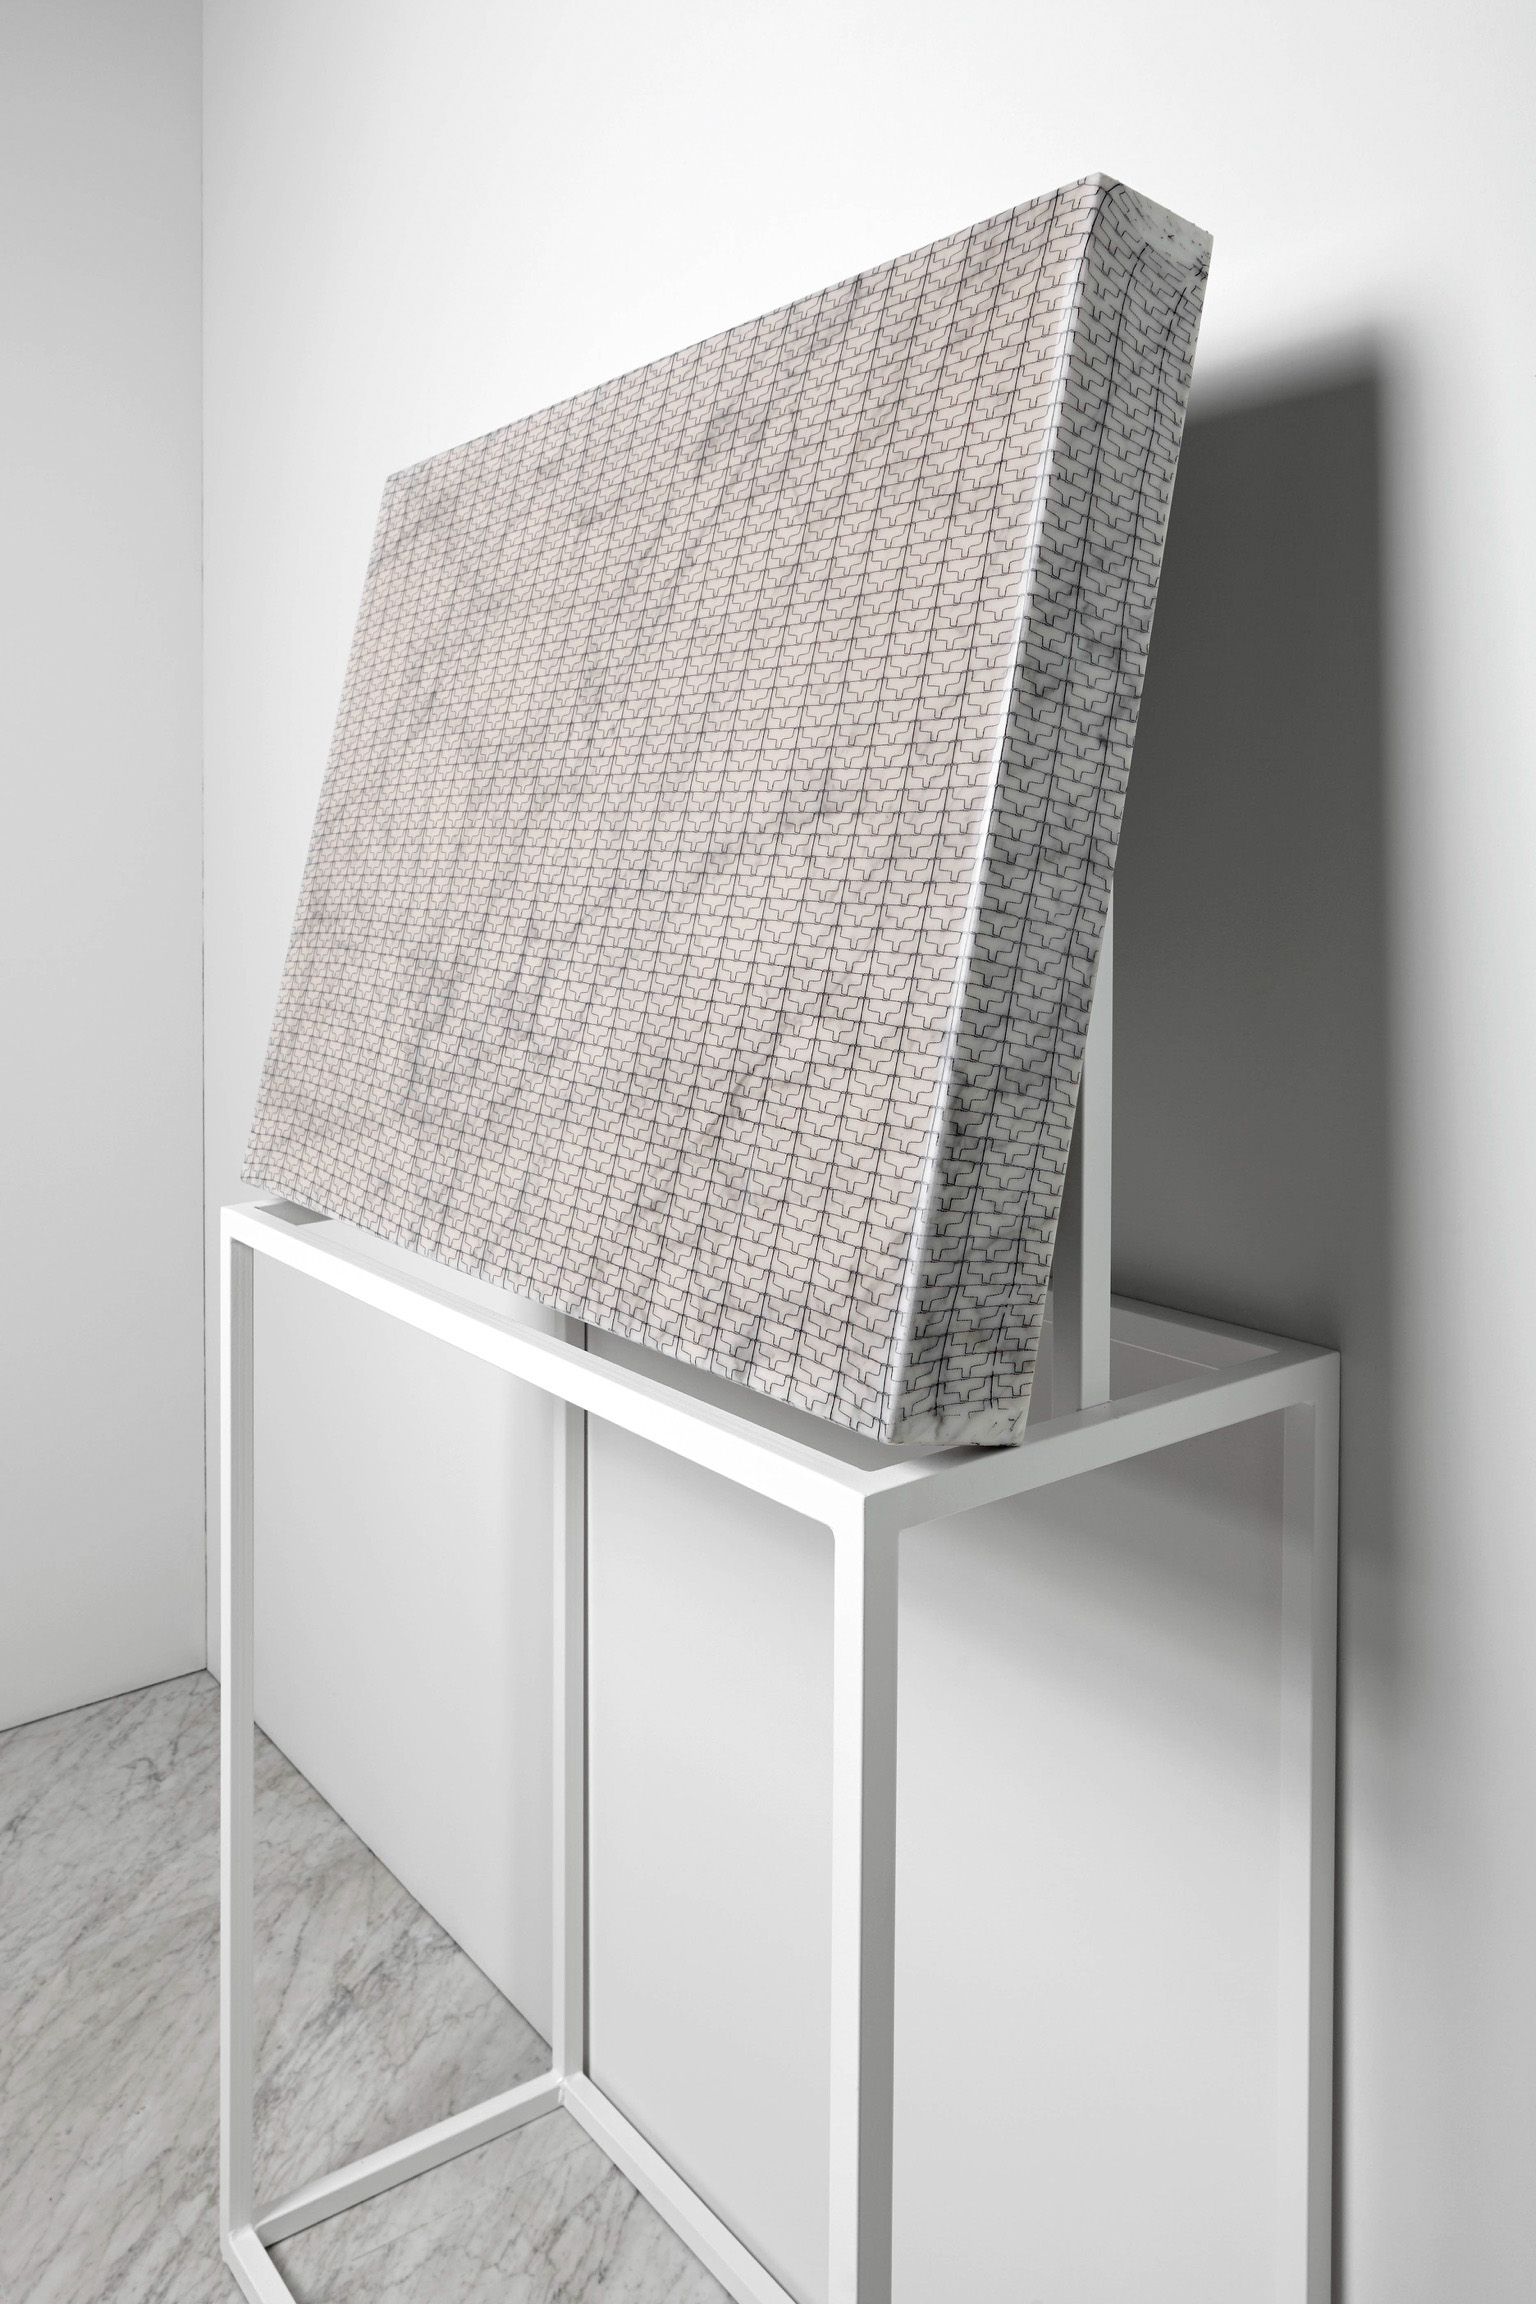 Michele Chiossi SUBABSTRACTION (white), 2017 marmo Arabescato Piana, pizzo, resina 100x70x10 cm quadro zigzag astrazione